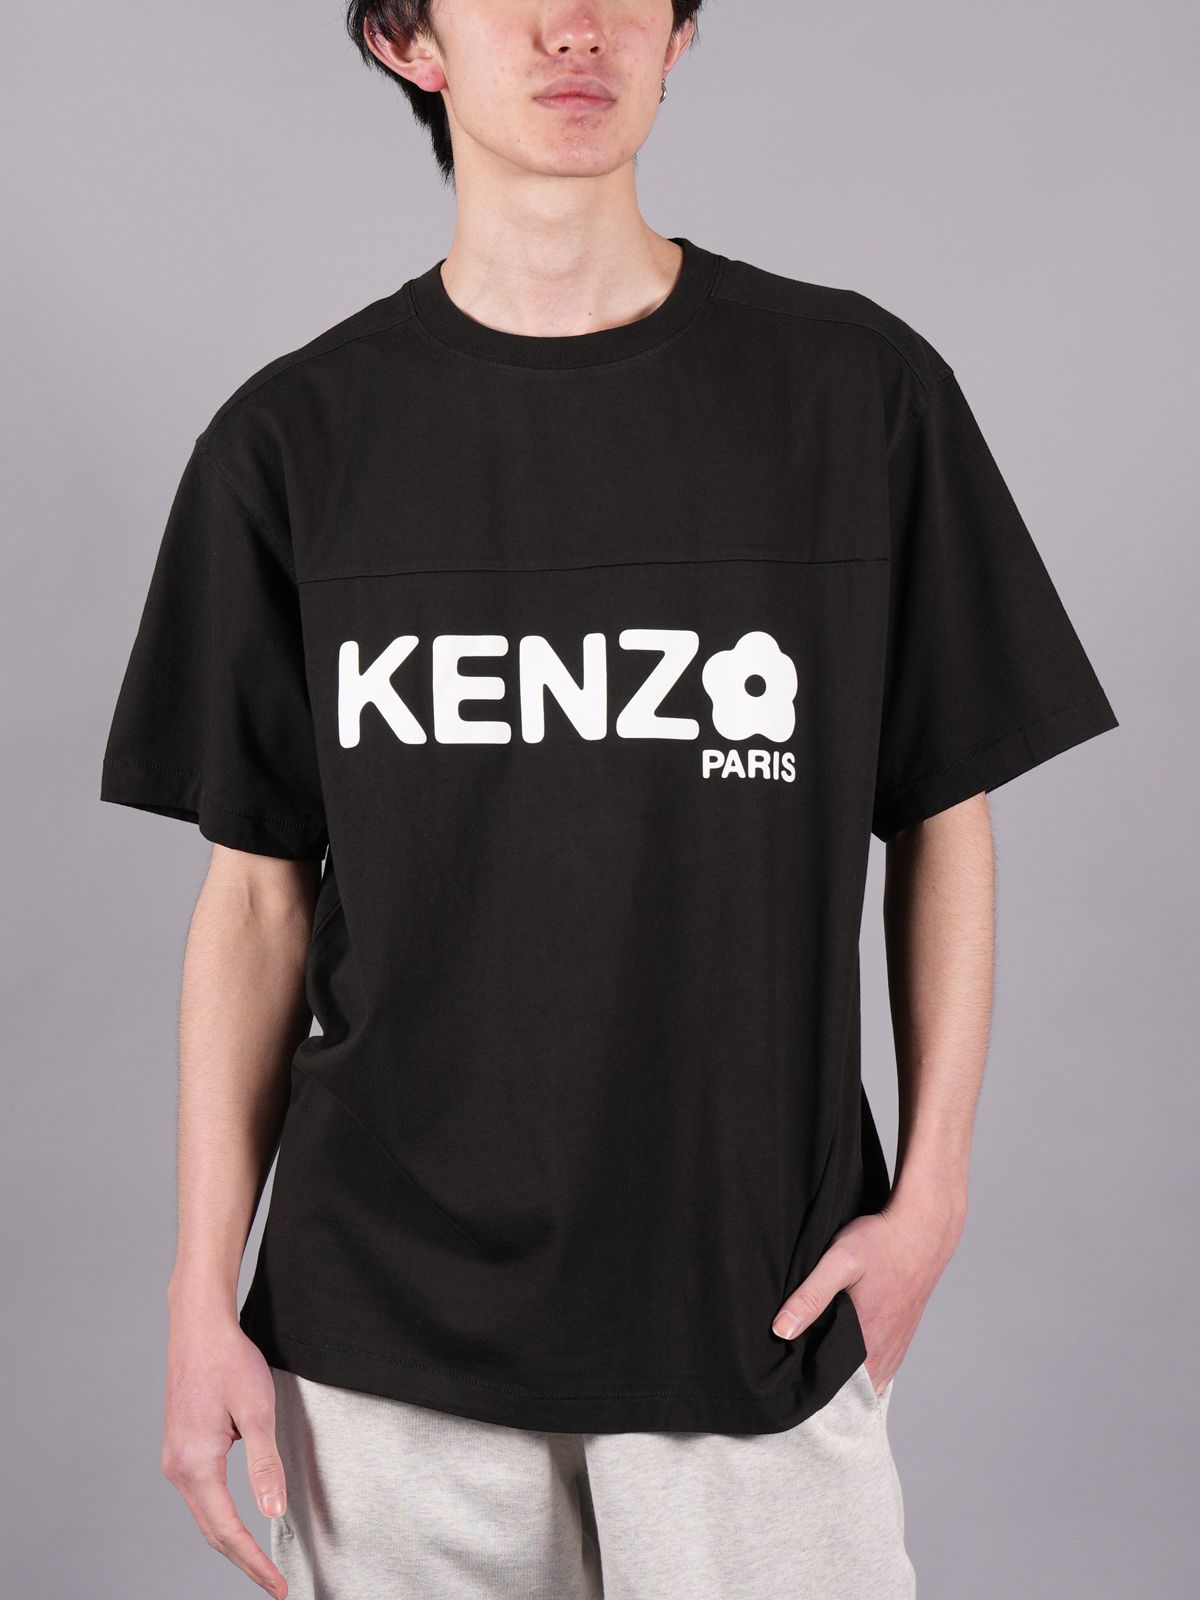 KENZO BOKE FLOWER 2.0 Tシャツ オーバーサイズ 黒 S-